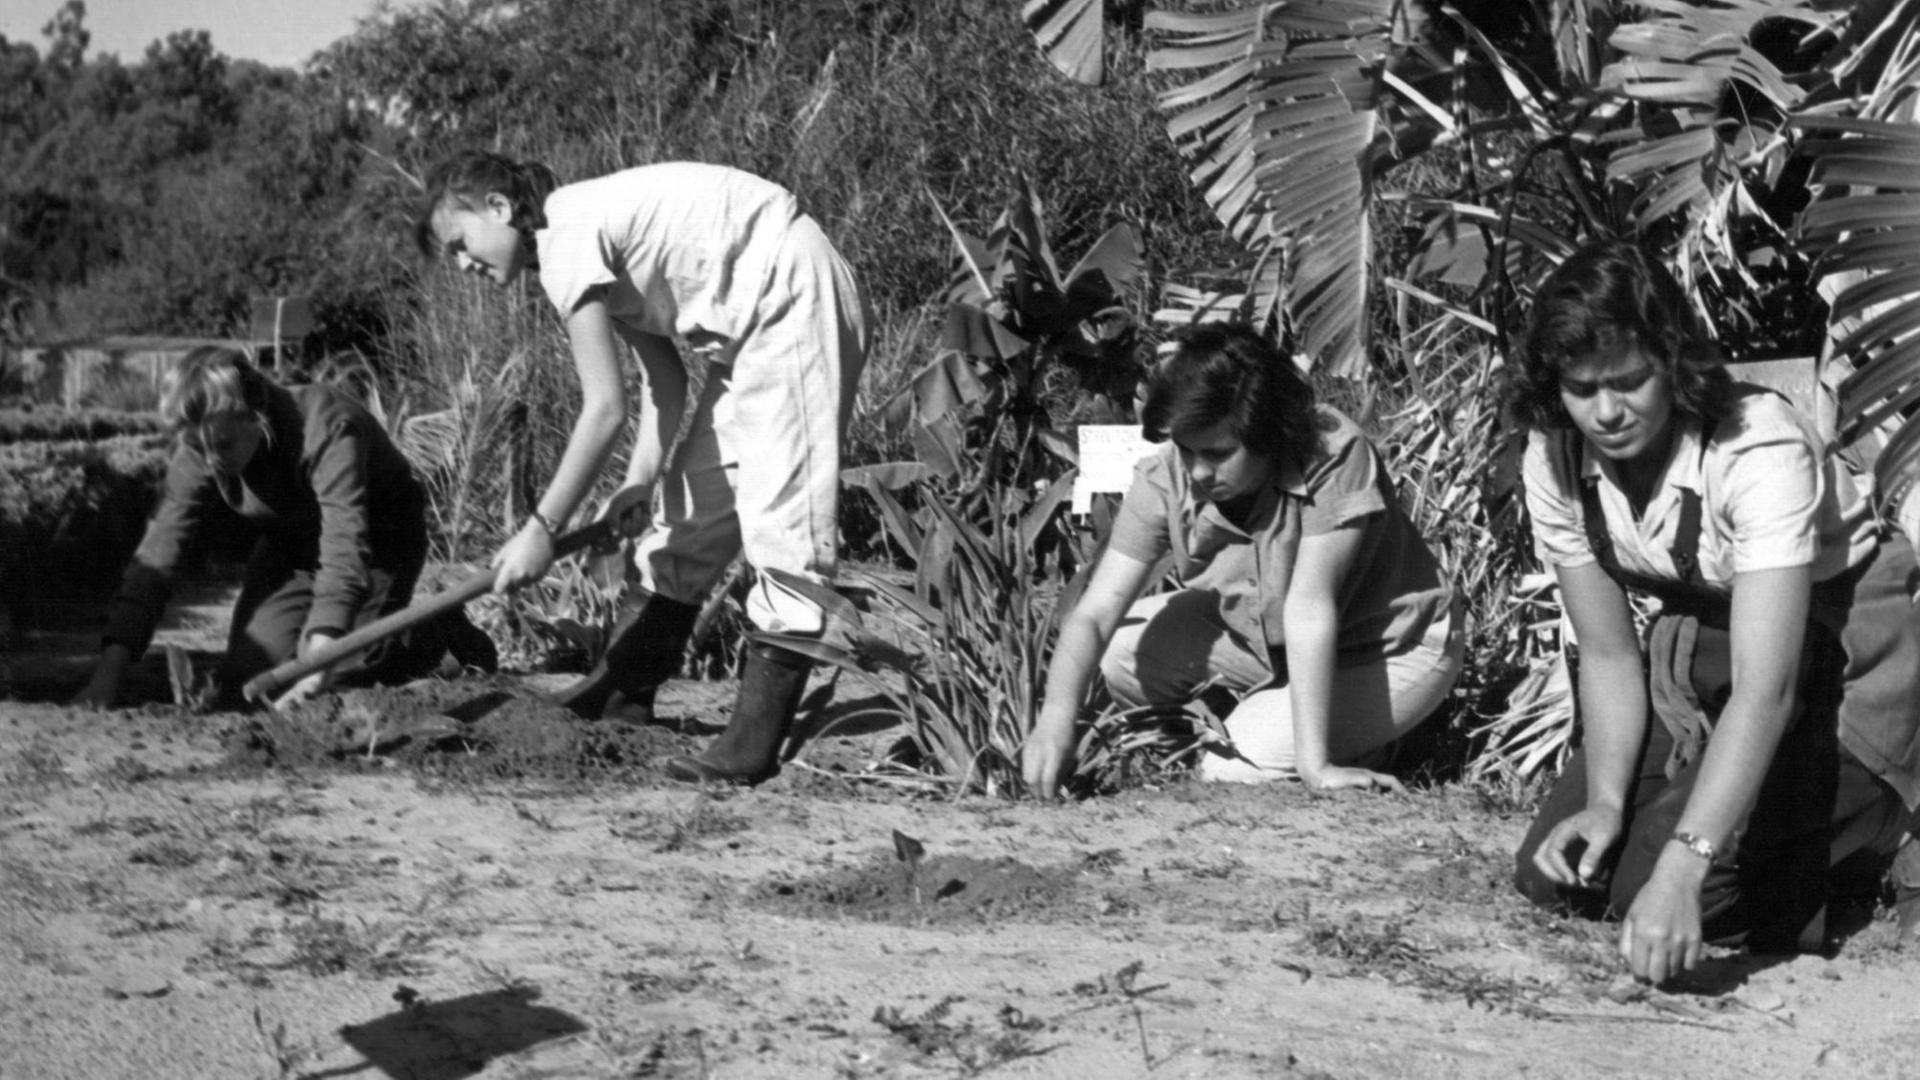 Harte Feldarbeit: Junge Frauen bei der Landarbeit unter der brütenden Sonnen auf dem Feld eines Kibbuz in Israel. (undatierte Aufnahme)